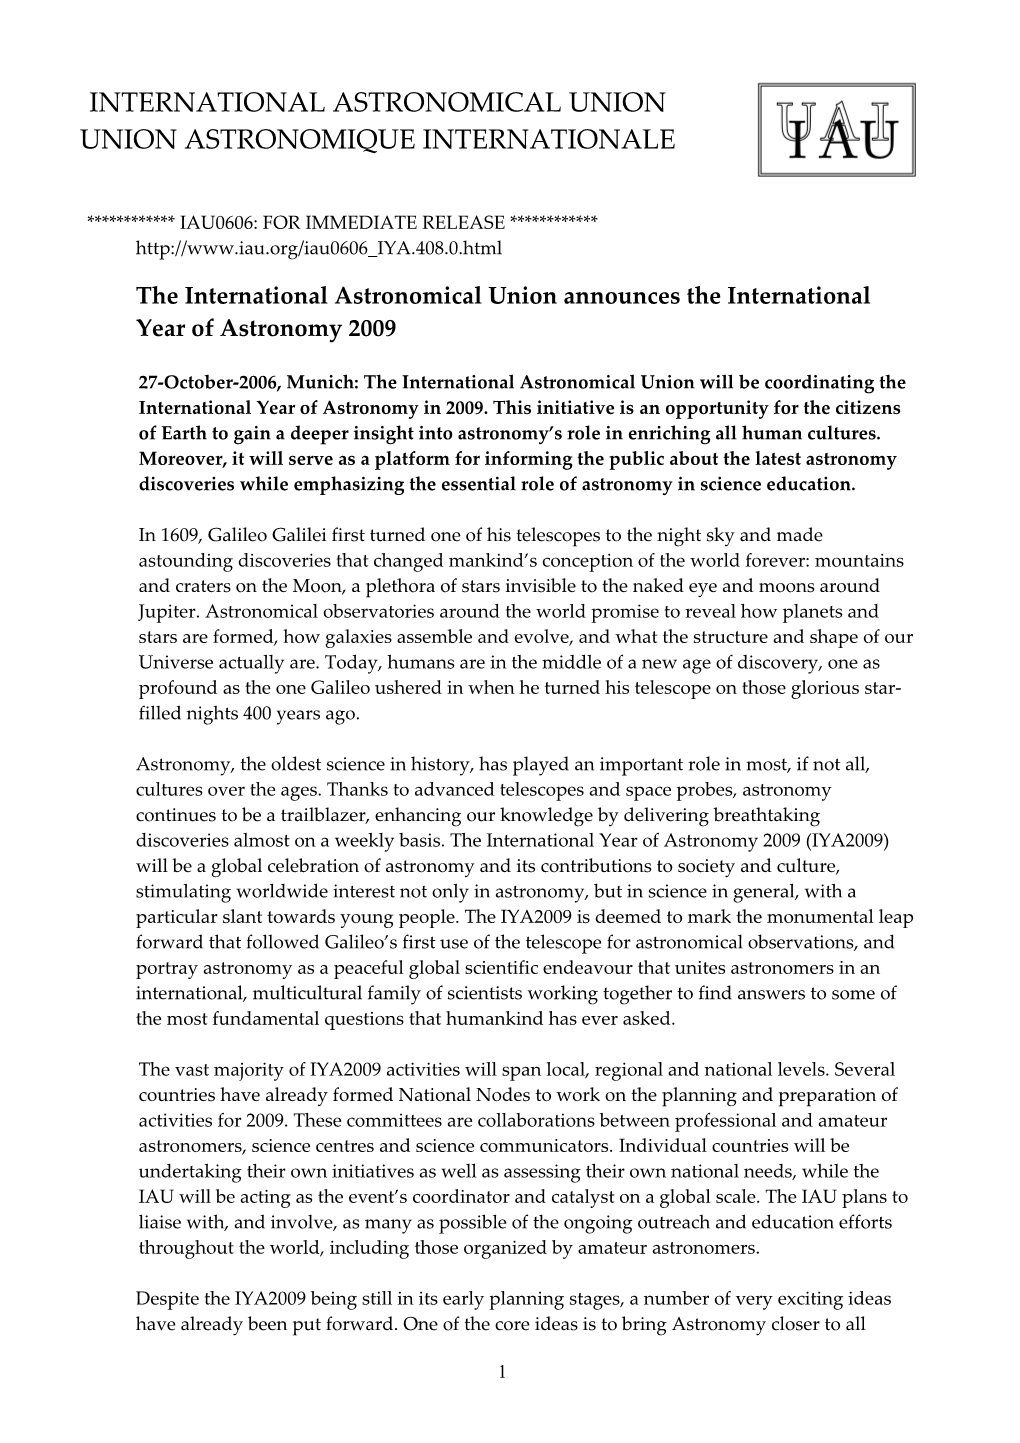 The International Astronomical Union Announces the International Year of Astronomy 2009